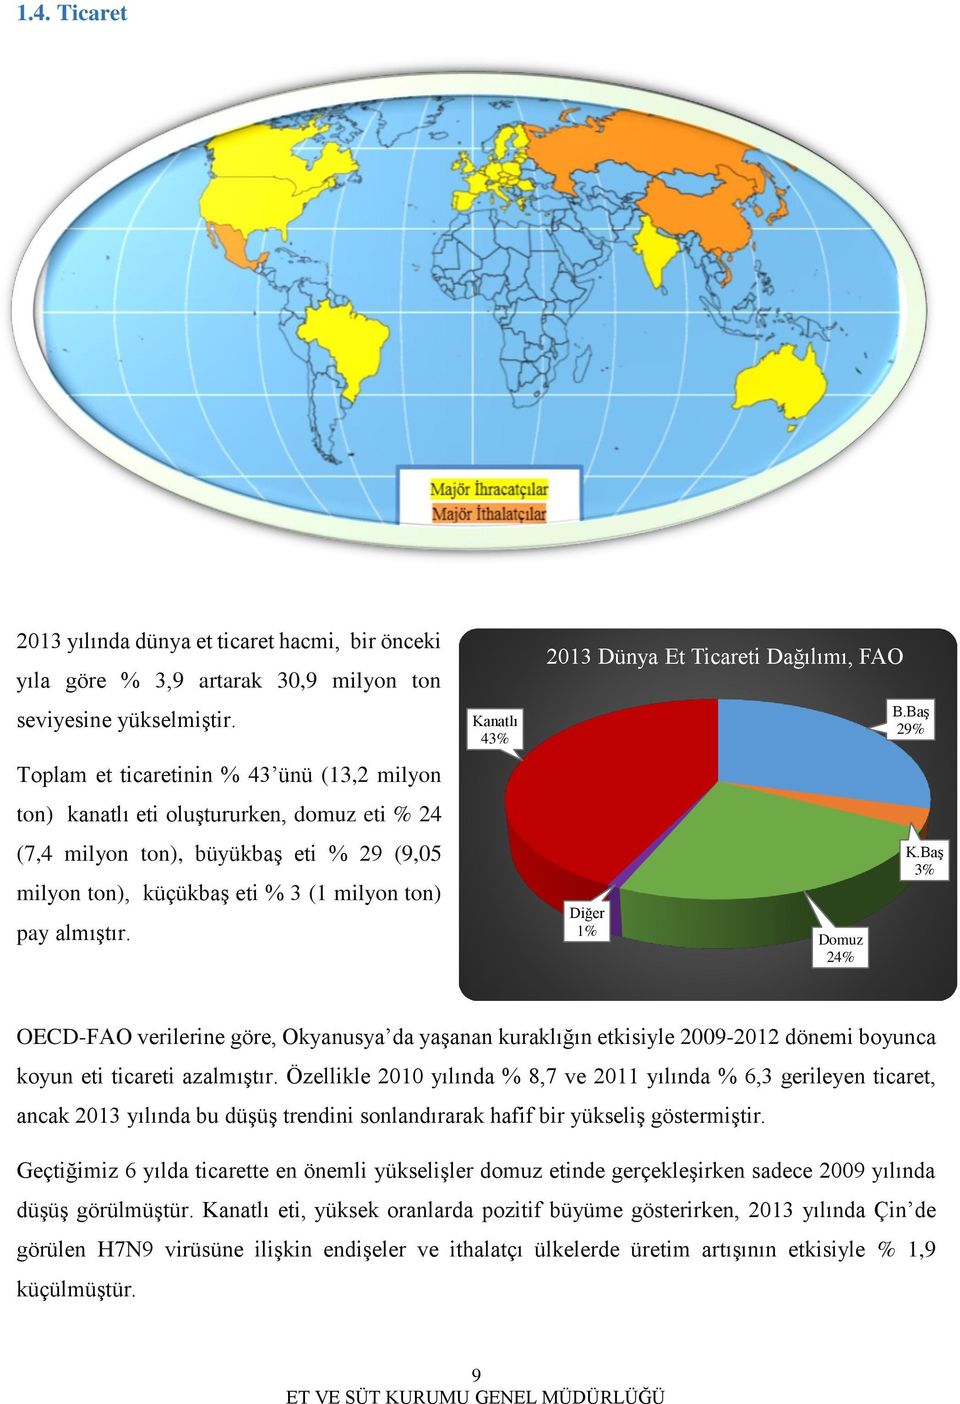 Kanatlı 43% 2013 Dünya Et Ticareti Dağılımı, FAO Diğer 1% Domuz 24% B.Baş 29% K.